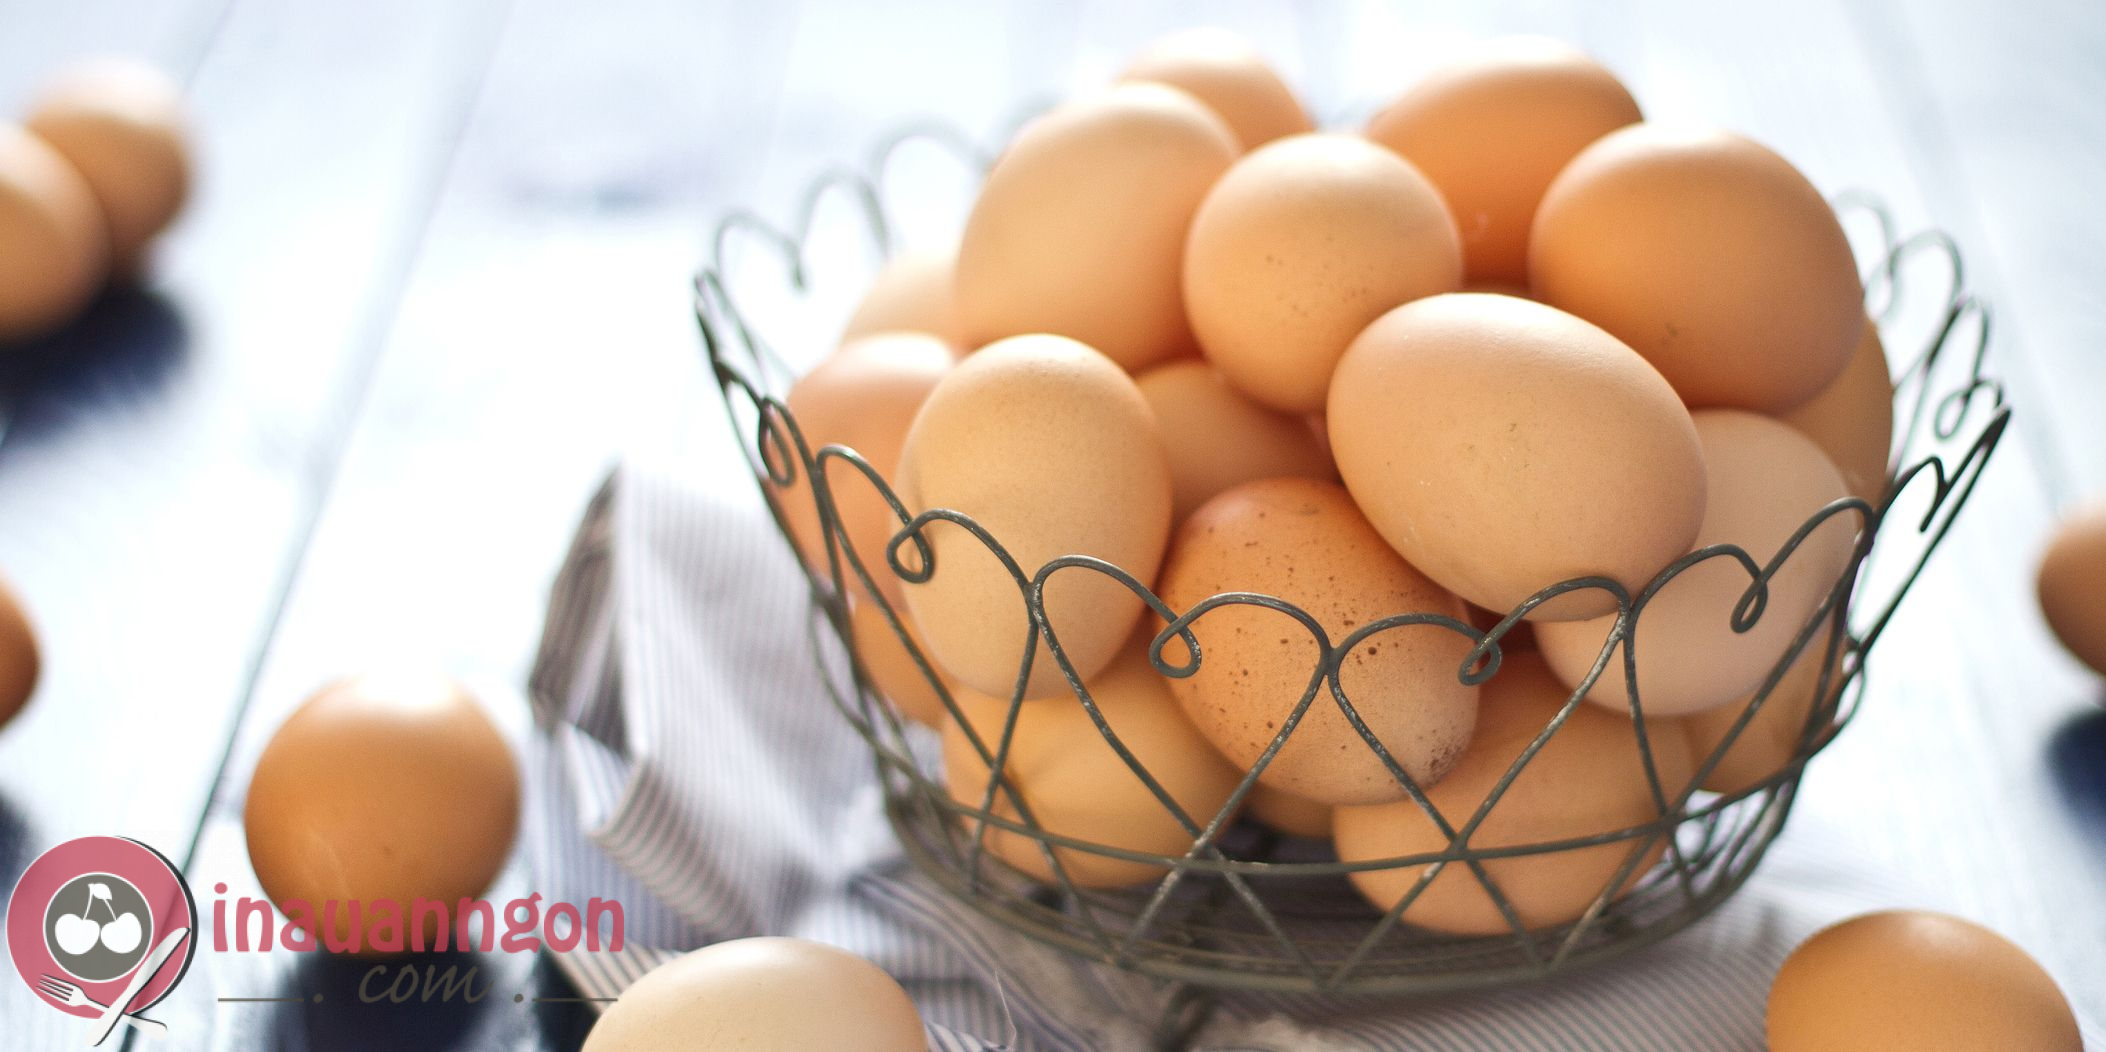 Trứng gà luộc chứa lượng calo thấp, chỉ ở mức 70 - 75 calo cho quả trứng vừa